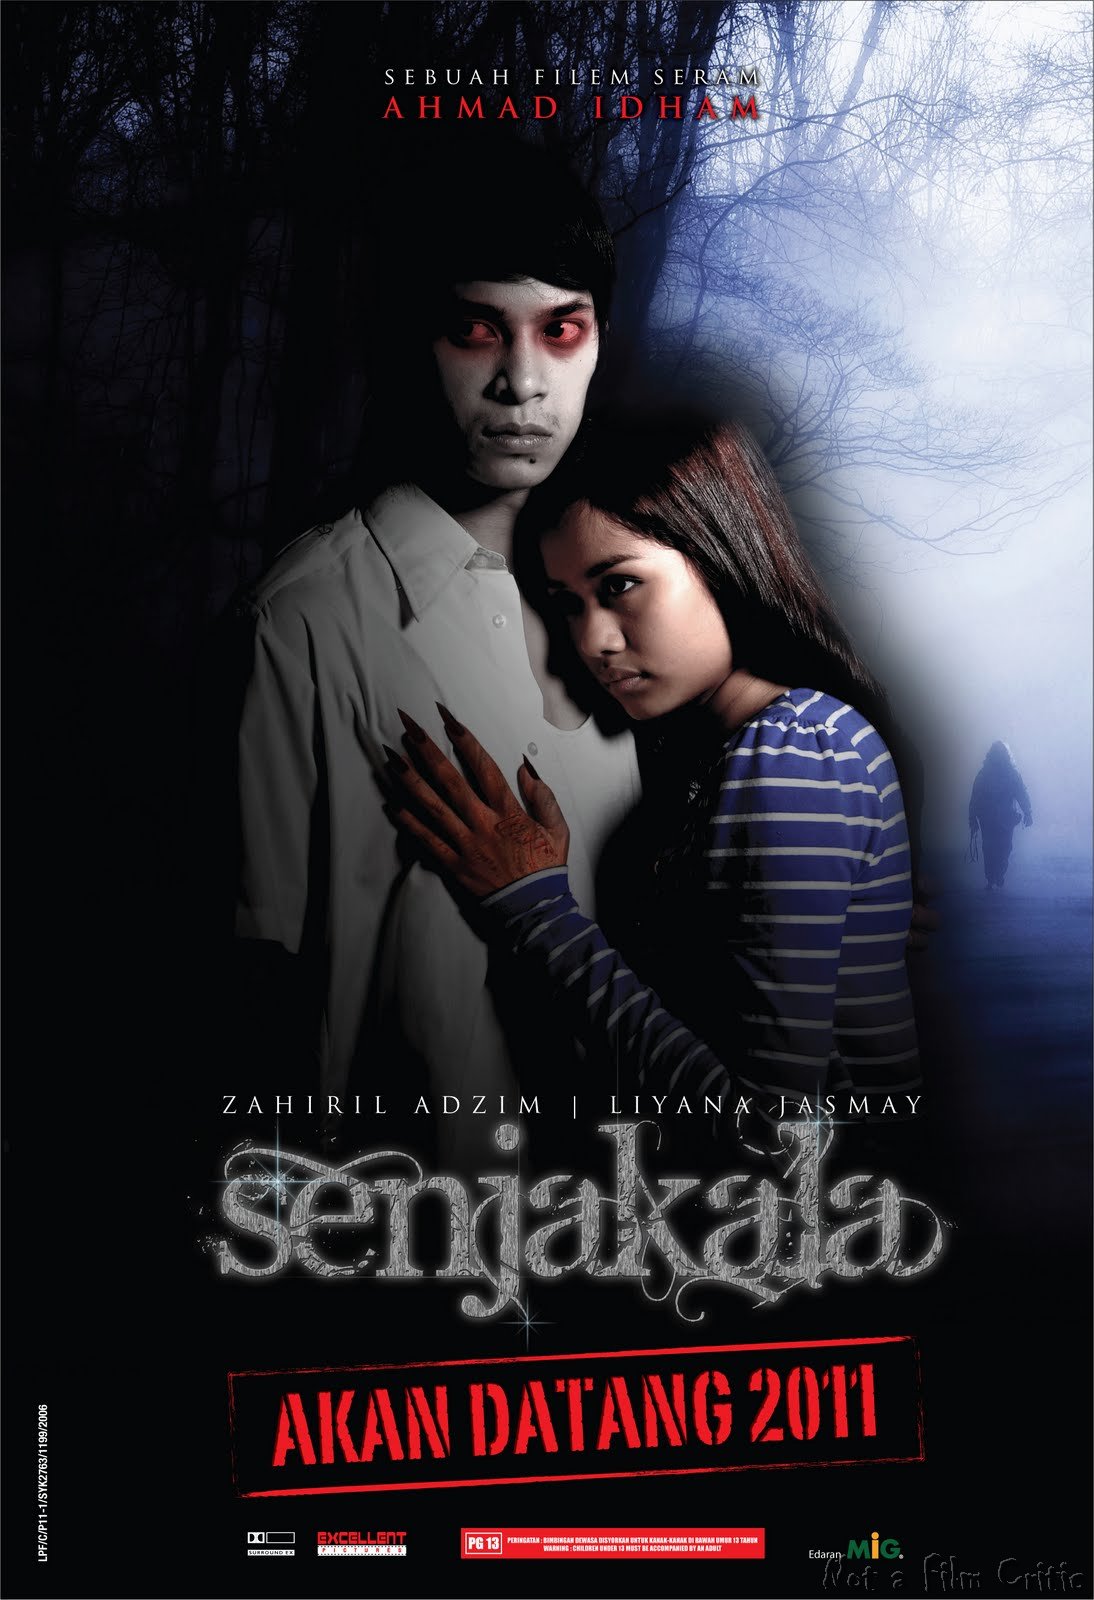 http://2.bp.blogspot.com/-7Mop_w8Wq2Q/TdpyvpOV6pI/AAAAAAAAAkM/xoL2Ii5nG2A/s1600/Senjakala-movie-poster-2011.jpg